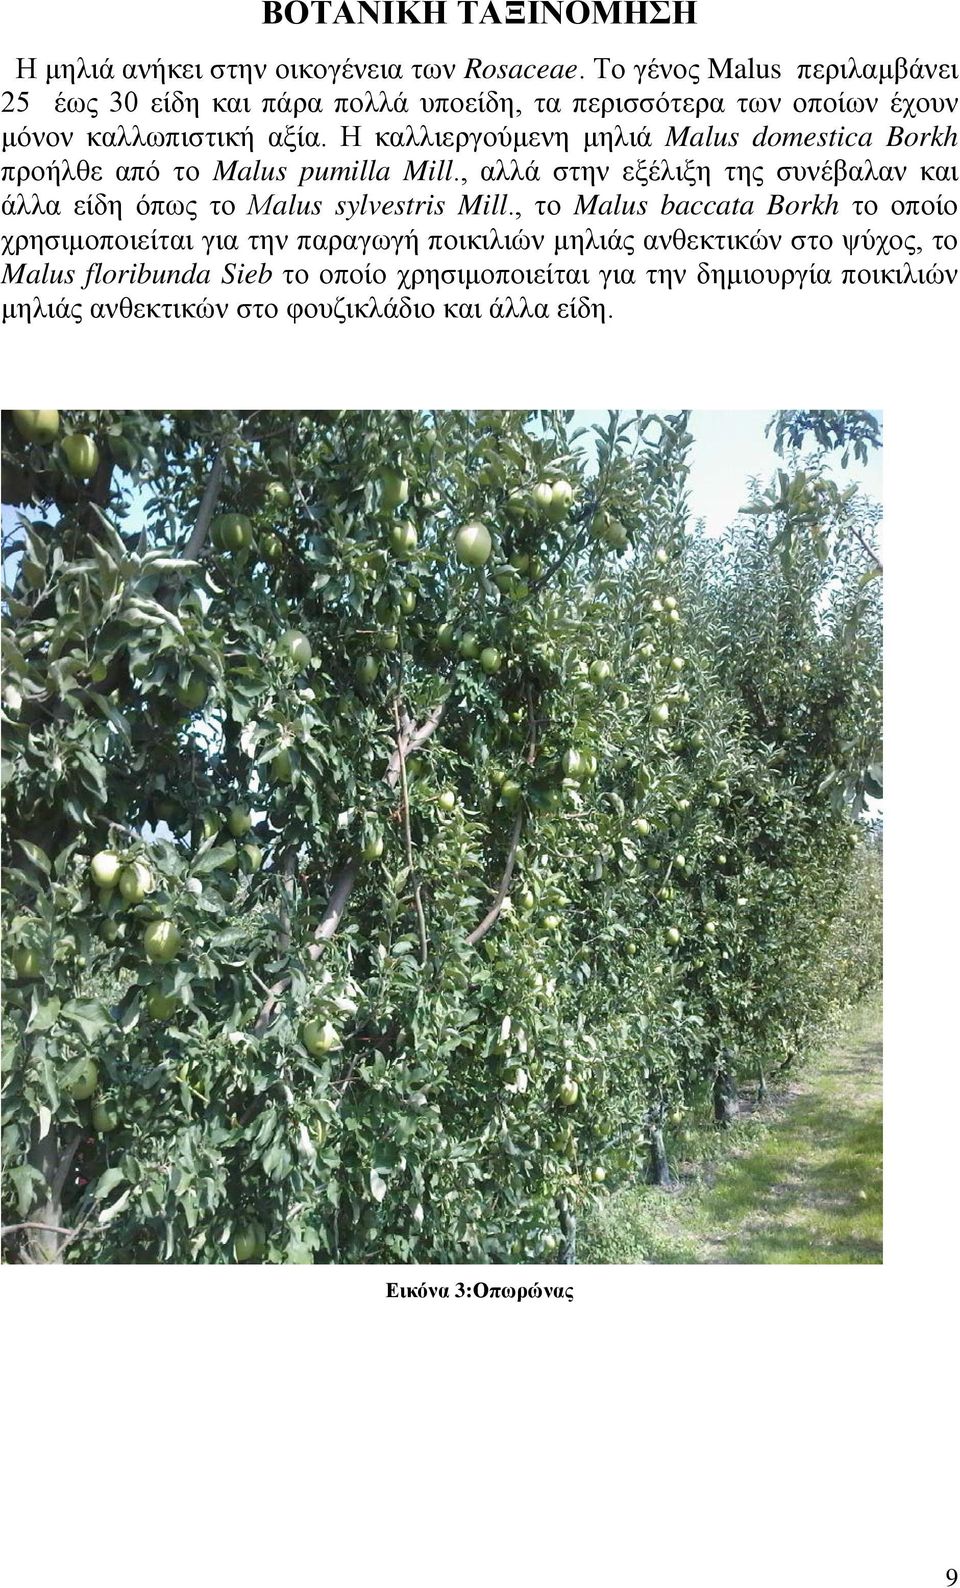 Η καλλιεργούμενη μηλιά Malus domestica Borkh προήλθε από το Malus pumilla Mill.